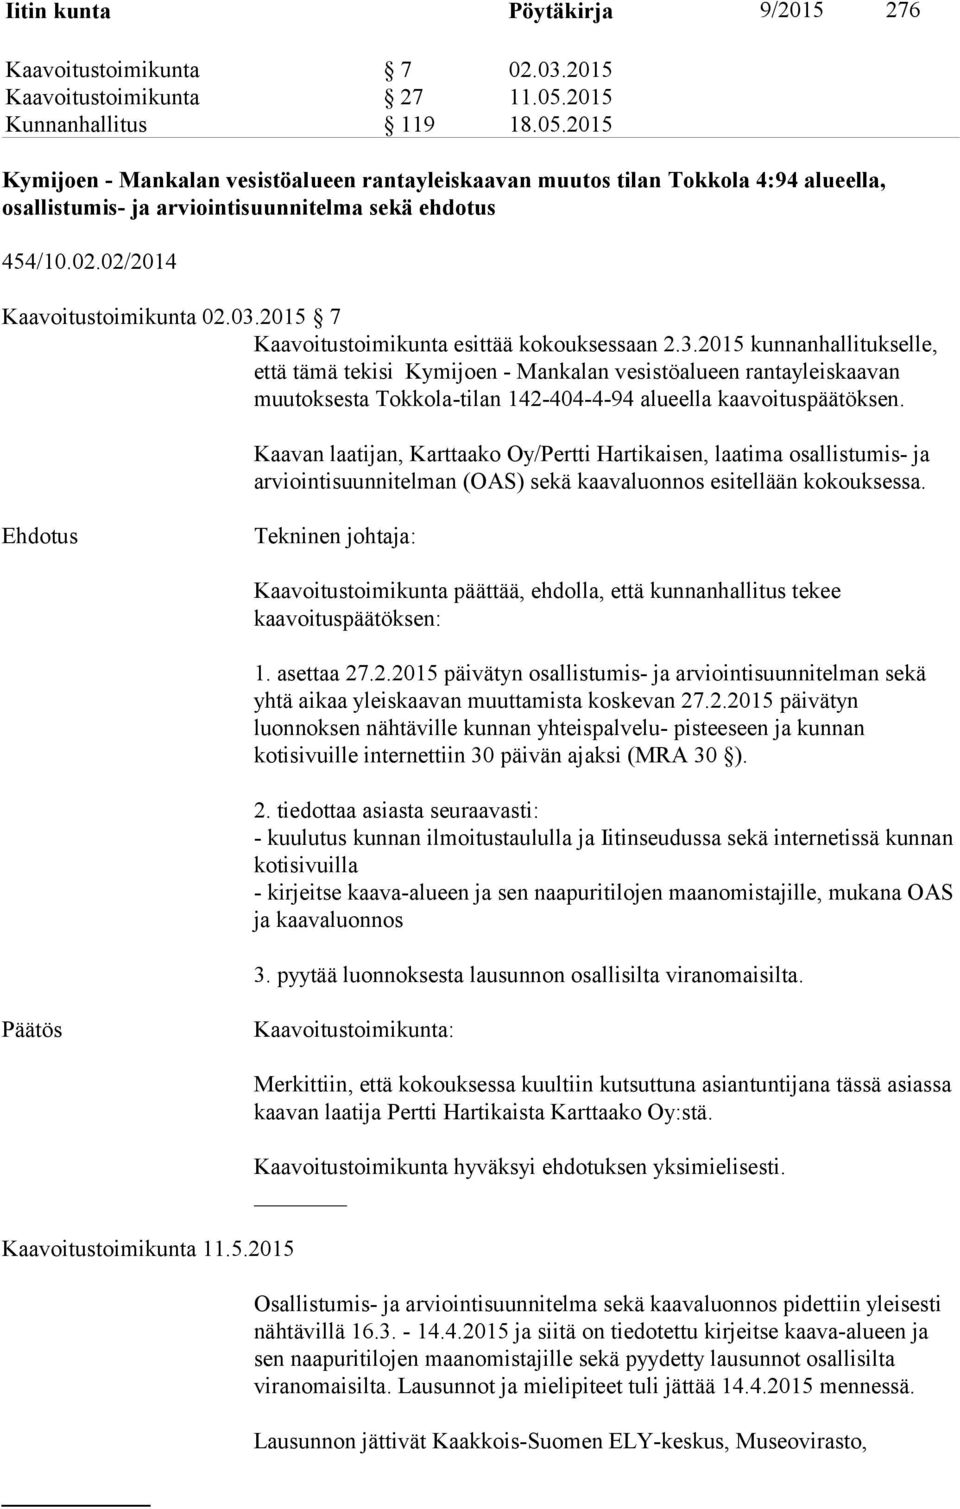 02/2014 Kaavoitustoimikunta 02.03.2015 7 Kaavoitustoimikunta esittää kokouksessaan 2.3.2015 kunnanhallitukselle, että tämä tekisi Kymijoen - Mankalan vesistöalueen rantayleiskaavan muutoksesta Tokkola-tilan 142-404-4-94 alueella kaavoituspäätöksen.